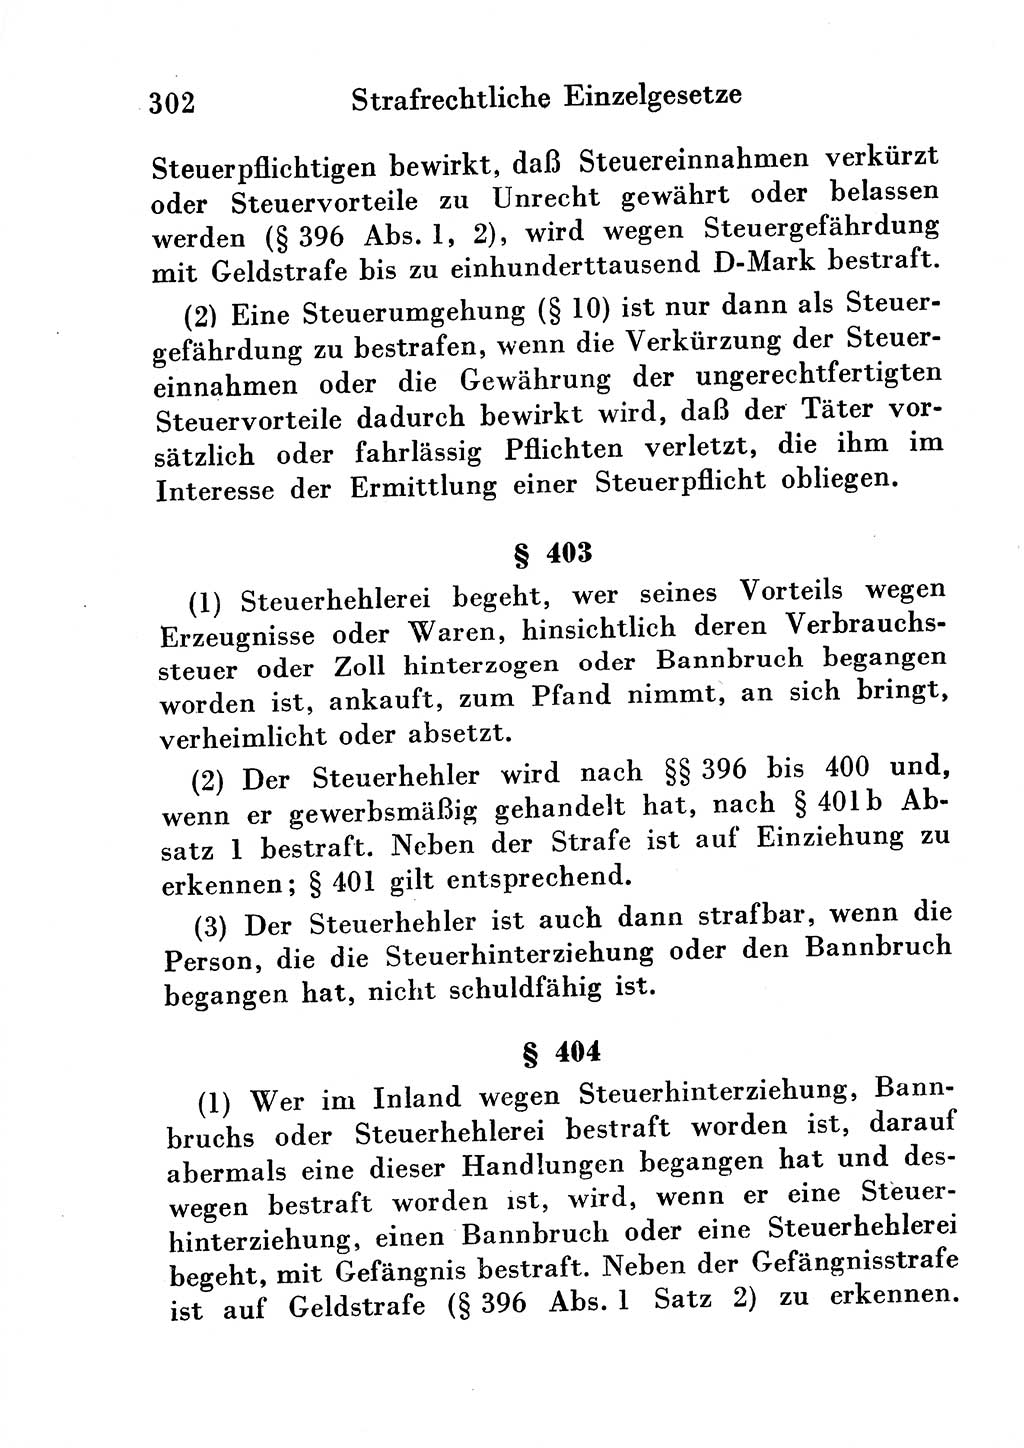 Strafgesetzbuch (StGB) und andere Strafgesetze [Deutsche Demokratische Republik (DDR)] 1954, Seite 302 (StGB Strafges. DDR 1954, S. 302)